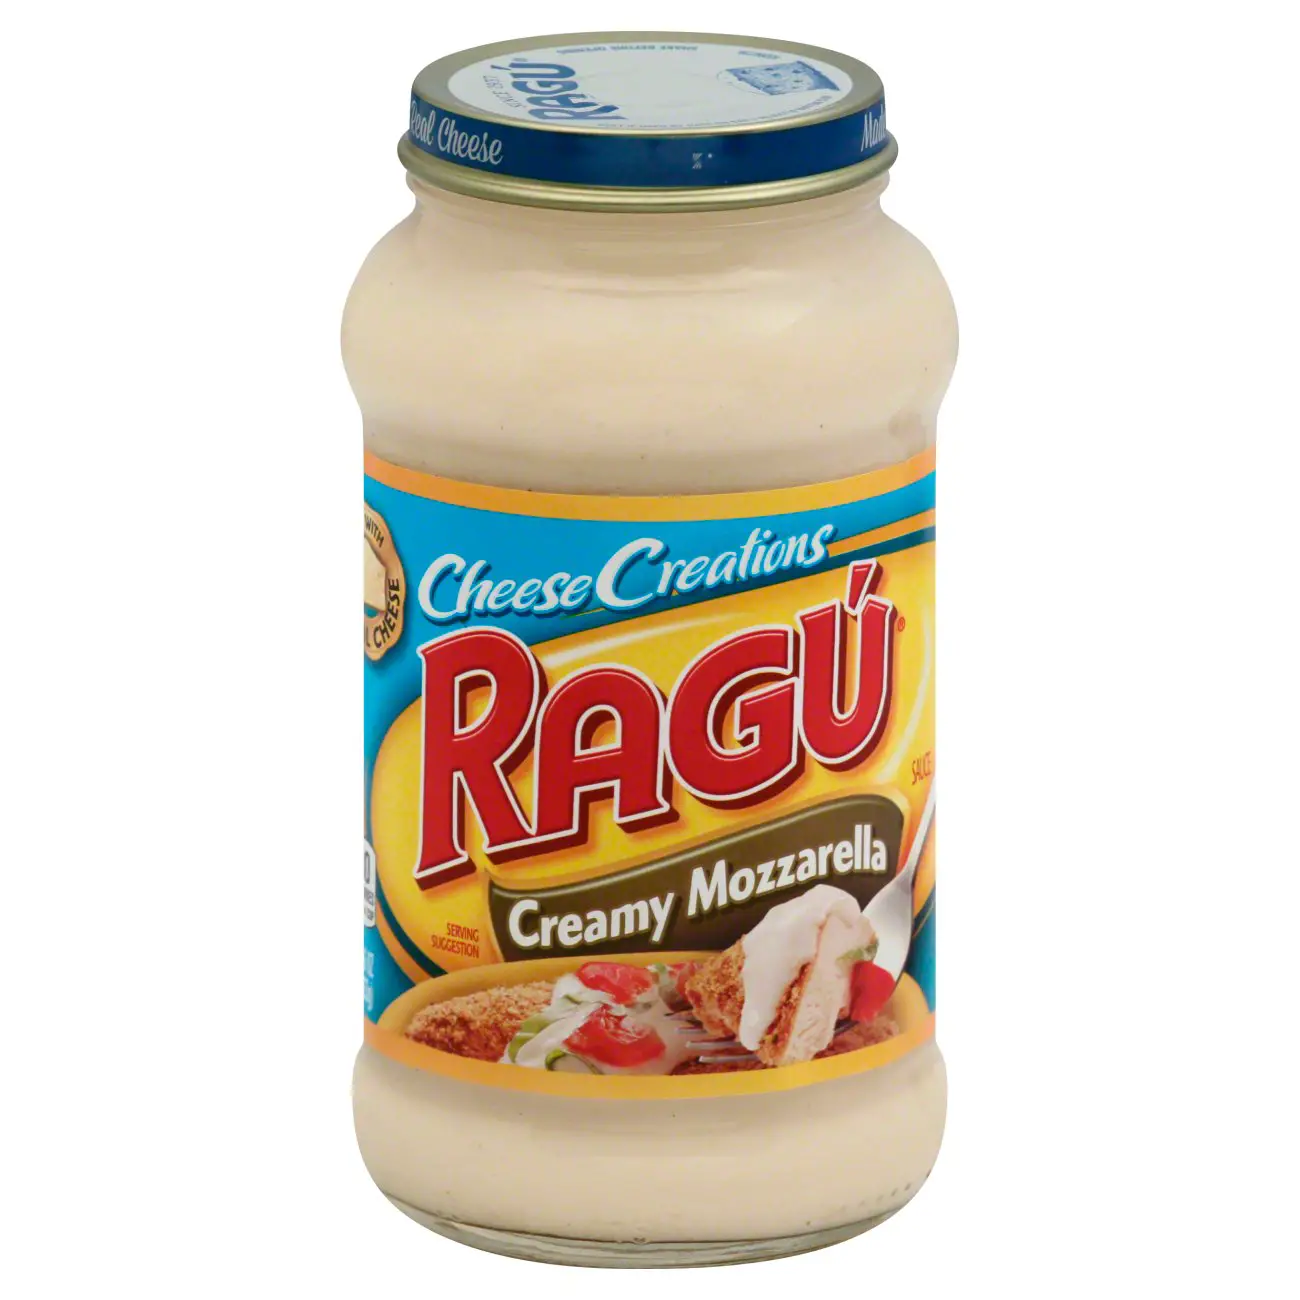 Ragu Cheese Creations Creamy Mozzarella Sauce